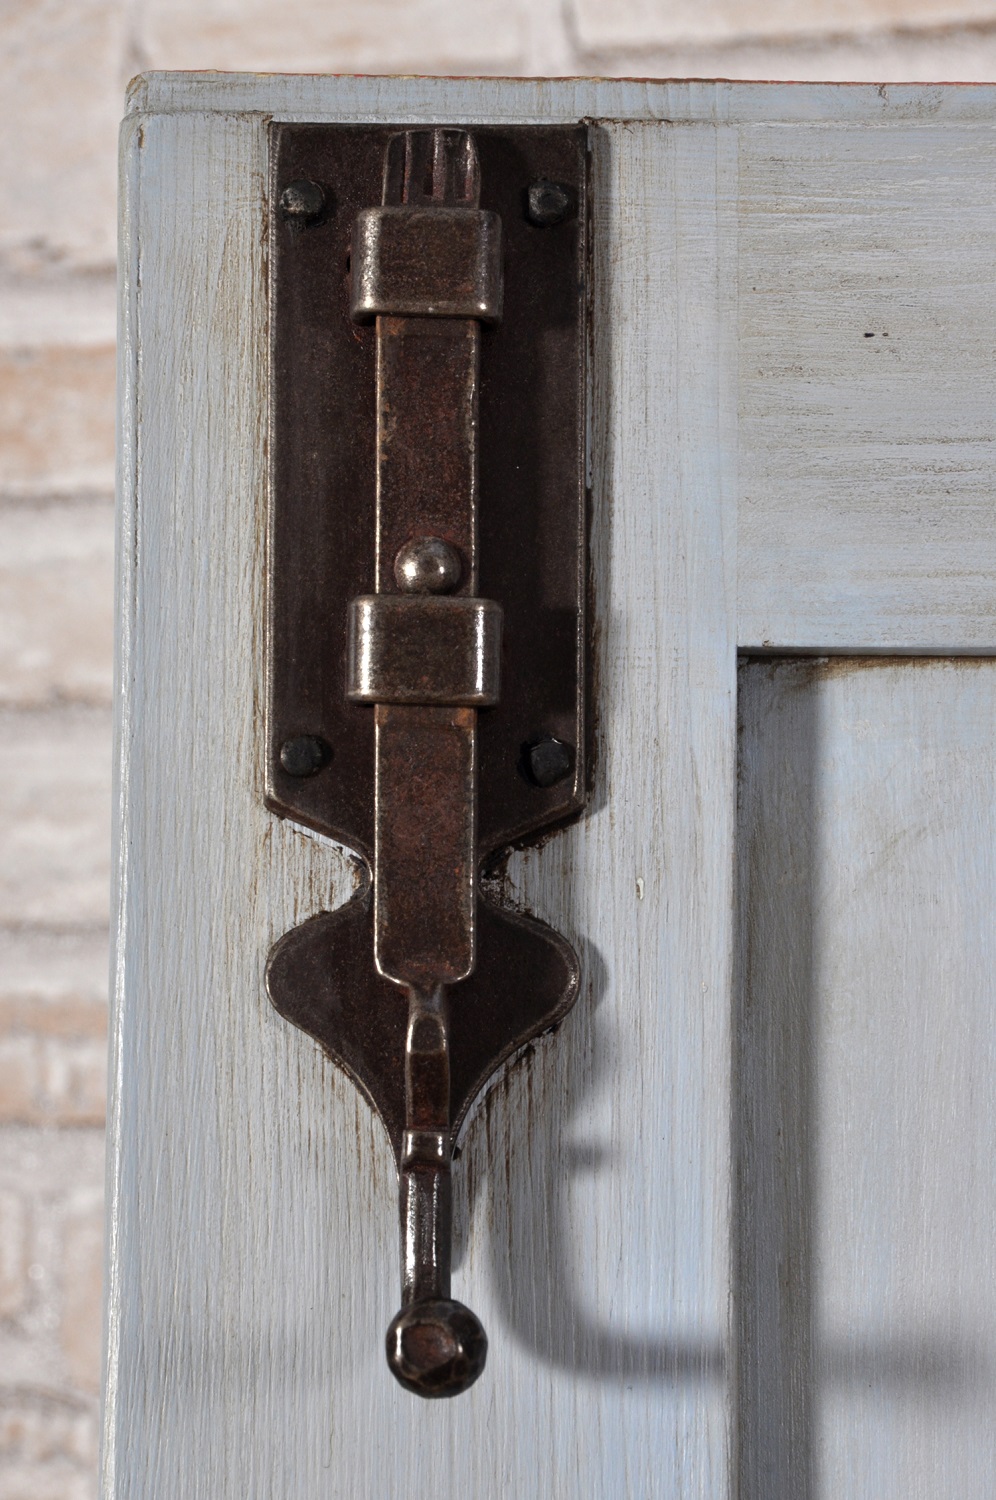 catenaccio ferma porta in ferro forgiato a caldo a mano di produzione made in Italy realizzato come il modello originale in ferro forgiato accessorio di lusso